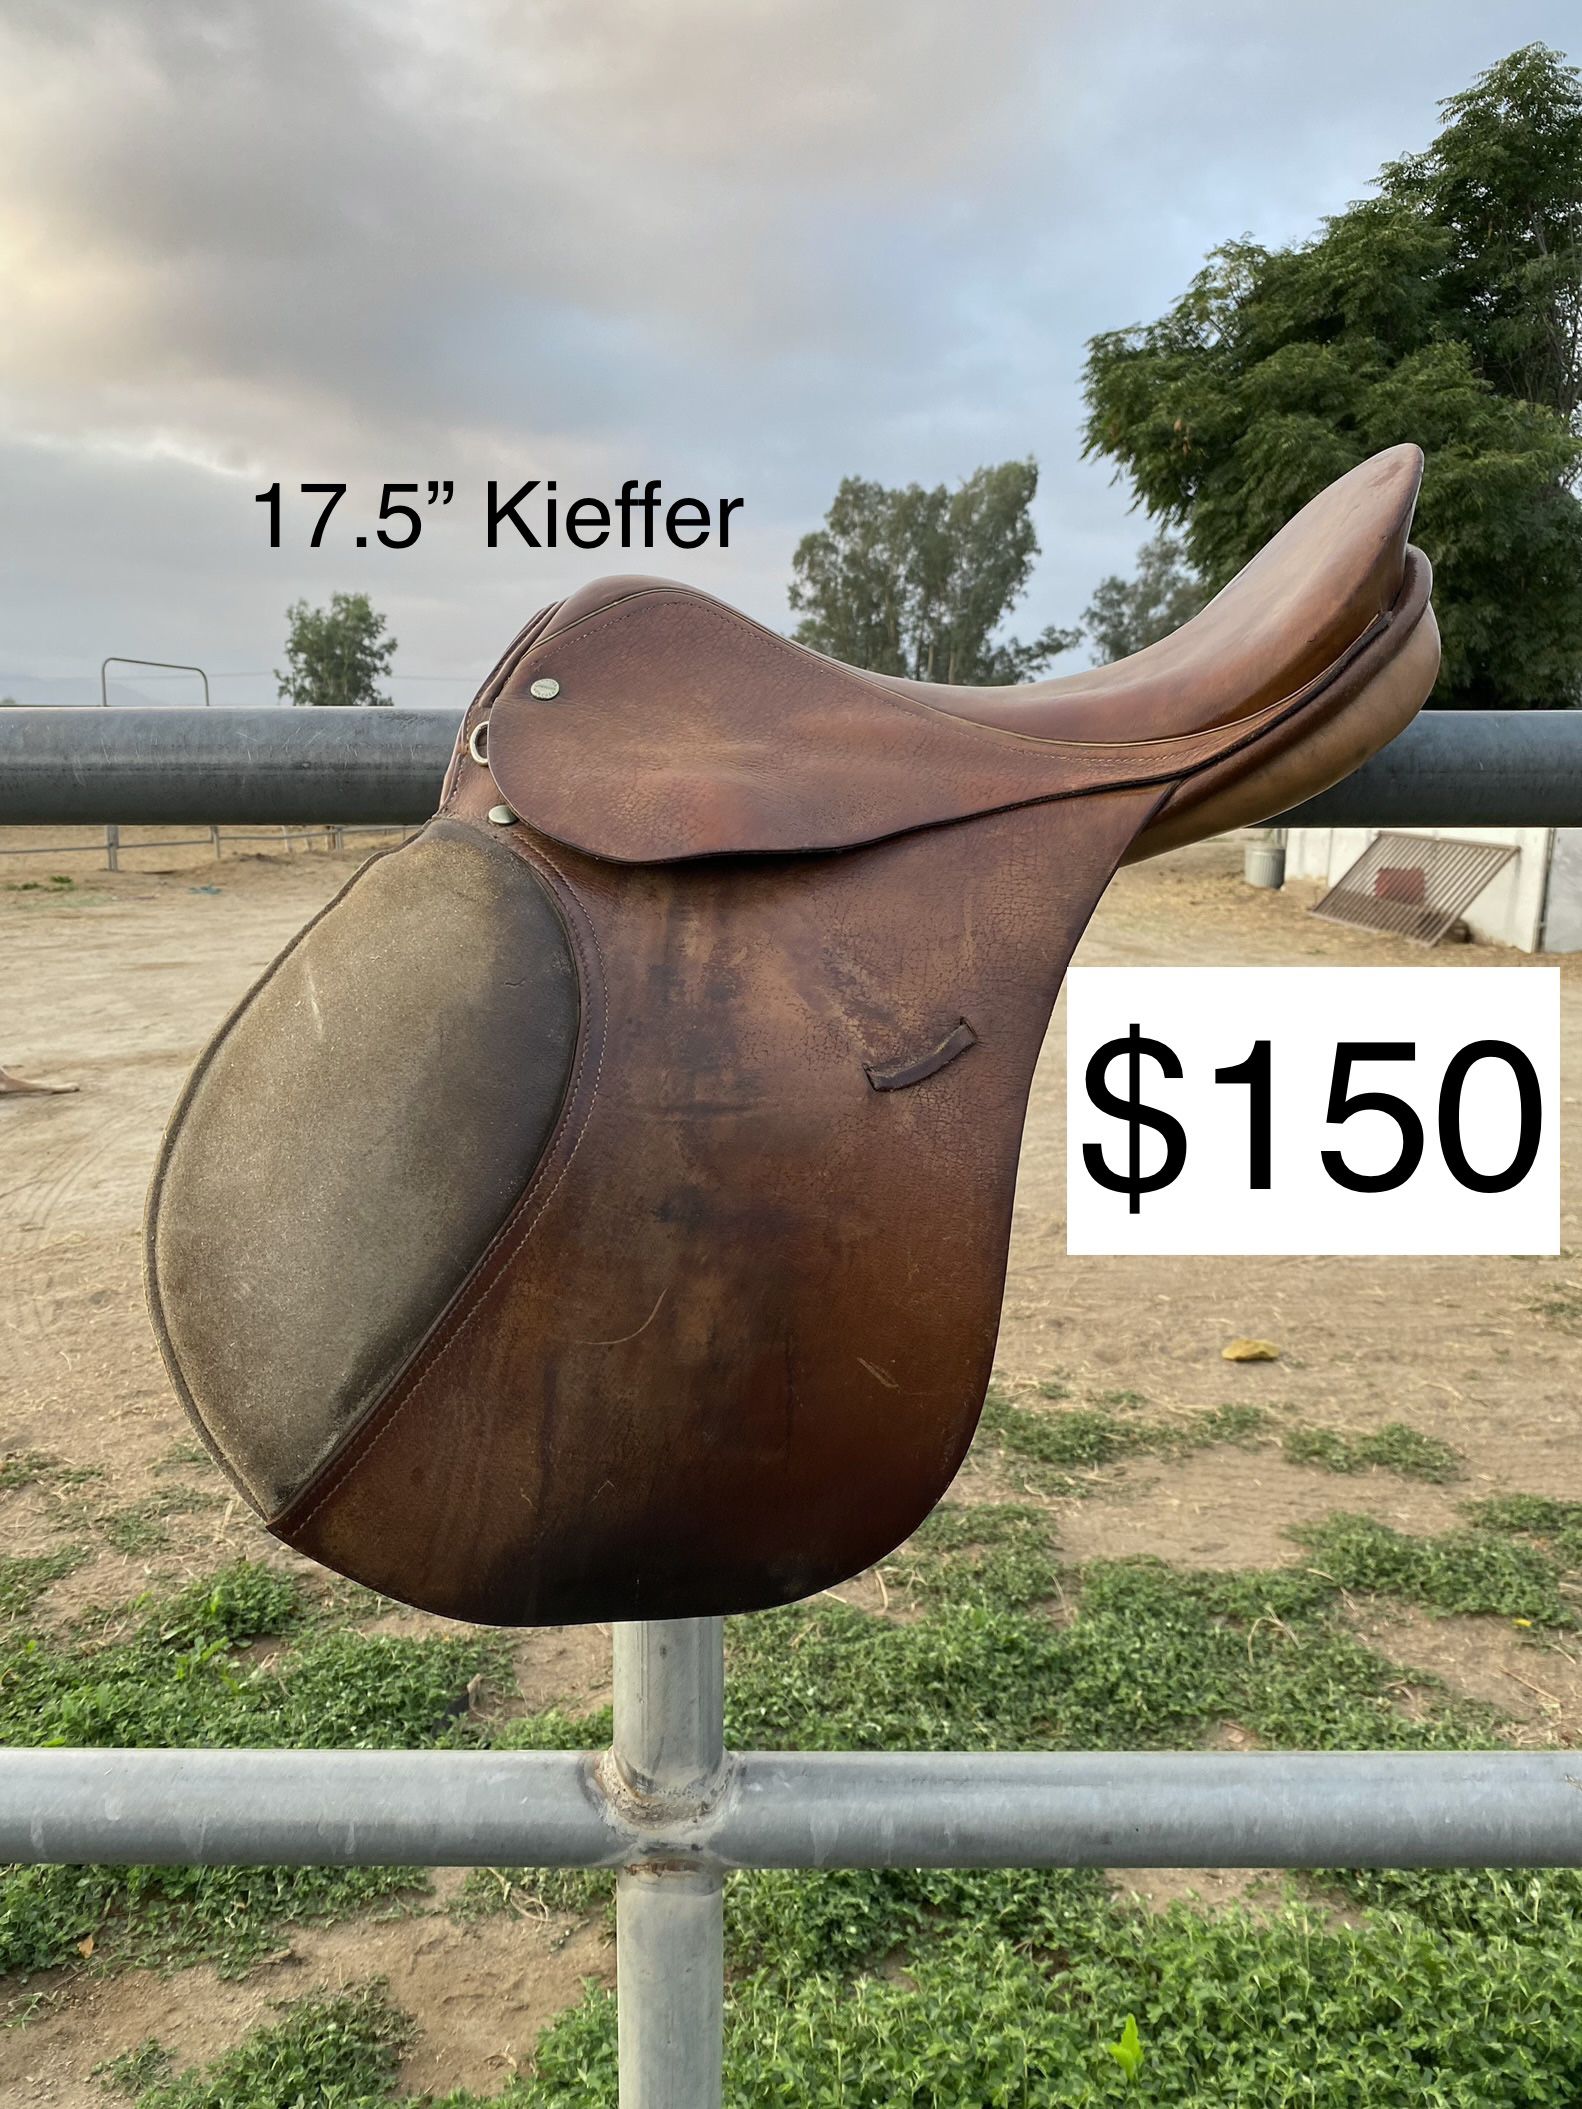 17.5" Kieffer English Saddle